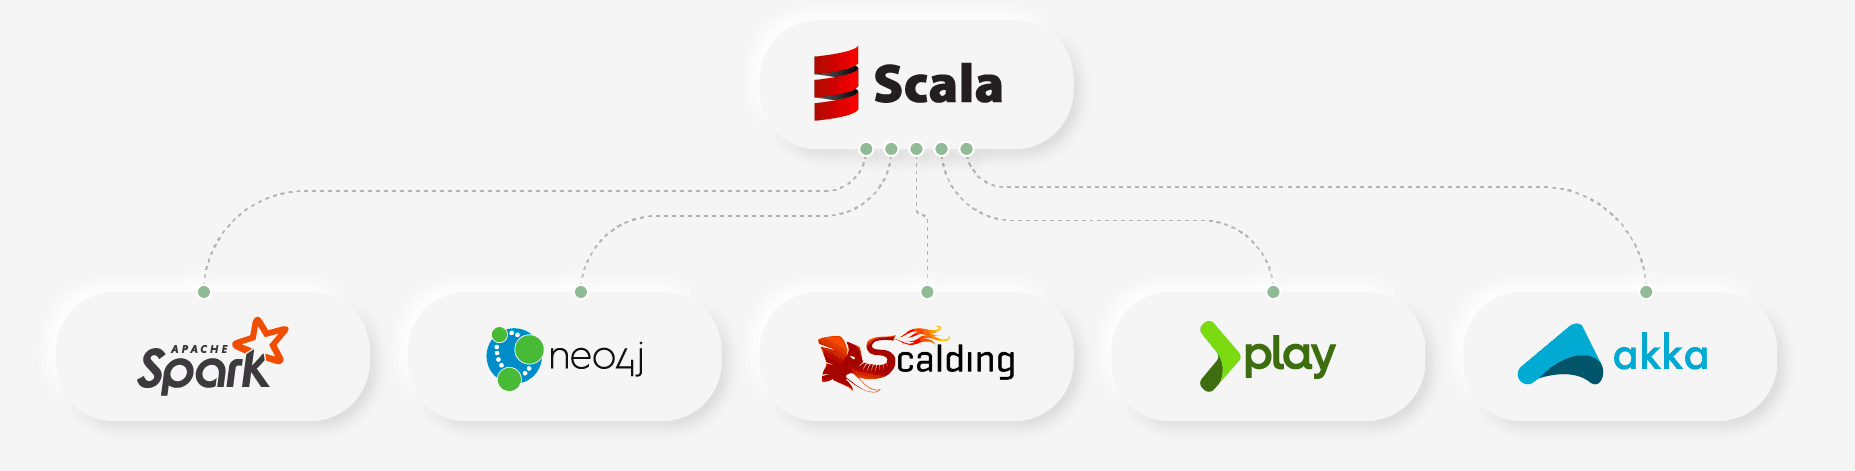 最佳Scala常见面试问题和答案合集推荐